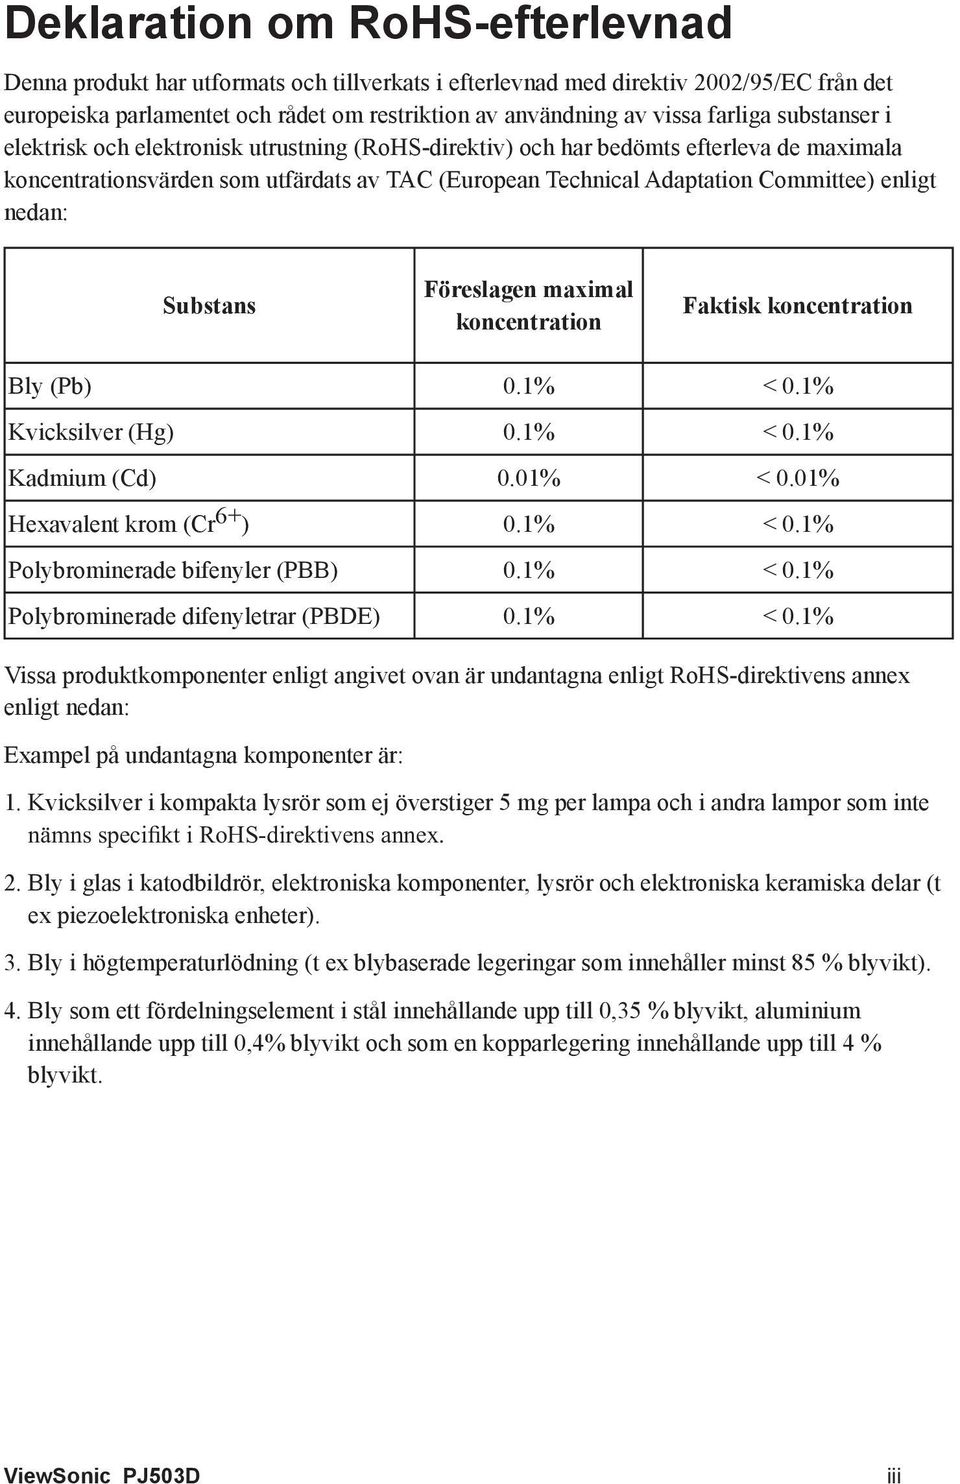 enligt nedan: Substans Föreslagen maximal koncentration Faktisk koncentration Bly (Pb) 0.1% < 0.1% Kvicksilver (Hg) 0.1% < 0.1% Kadmium (Cd) 0.01% < 0.01% Hexavalent krom (Cr 6+ ) 0.1% < 0.1% Polybrominerade bifenyler (PBB) 0.